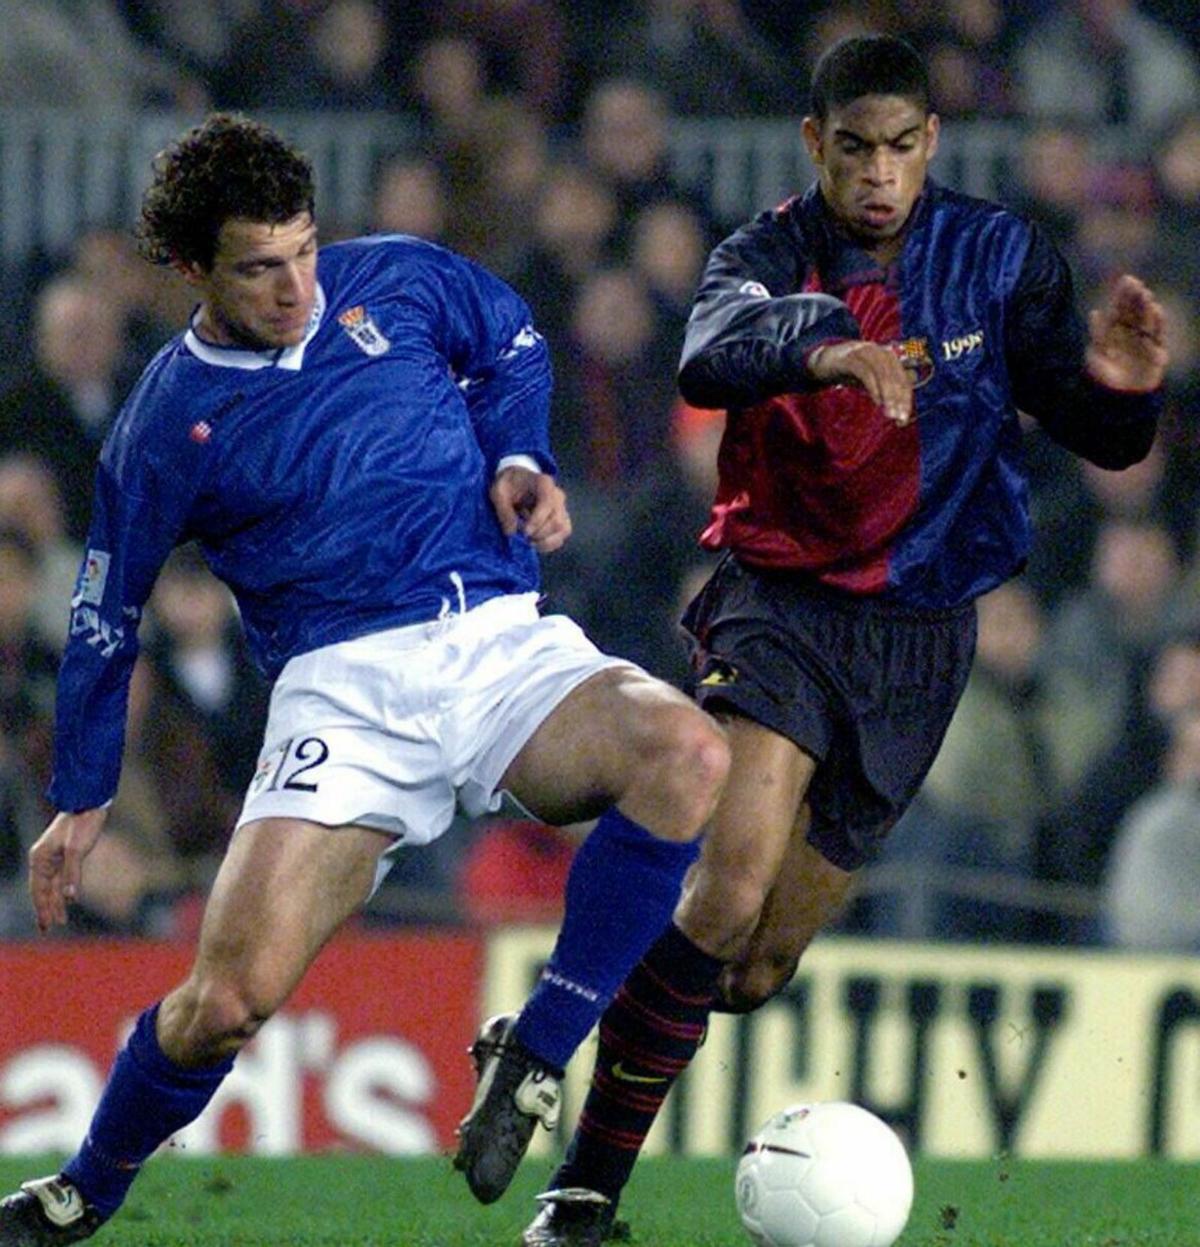 Pompei, en su época como futbolista del Oviedo, disputando un balón con Michael Reiziger, jugador del Barça, en 1999.